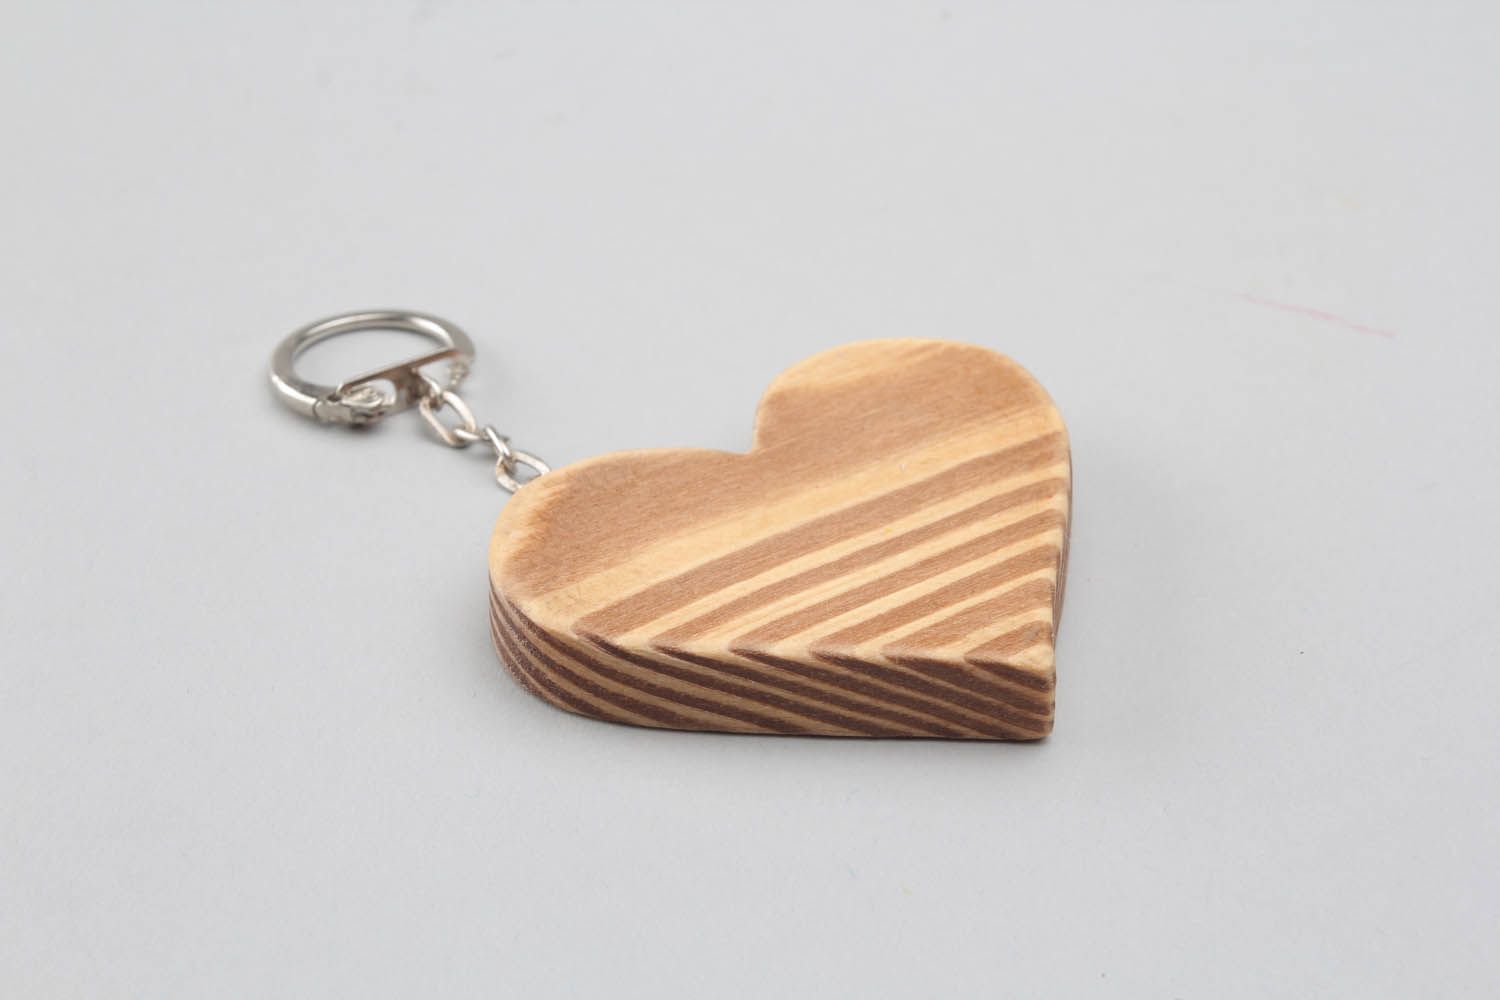 Chaveiro artesanal de madeira para chaves na forma de coração pintado com tintas a mão foto 2